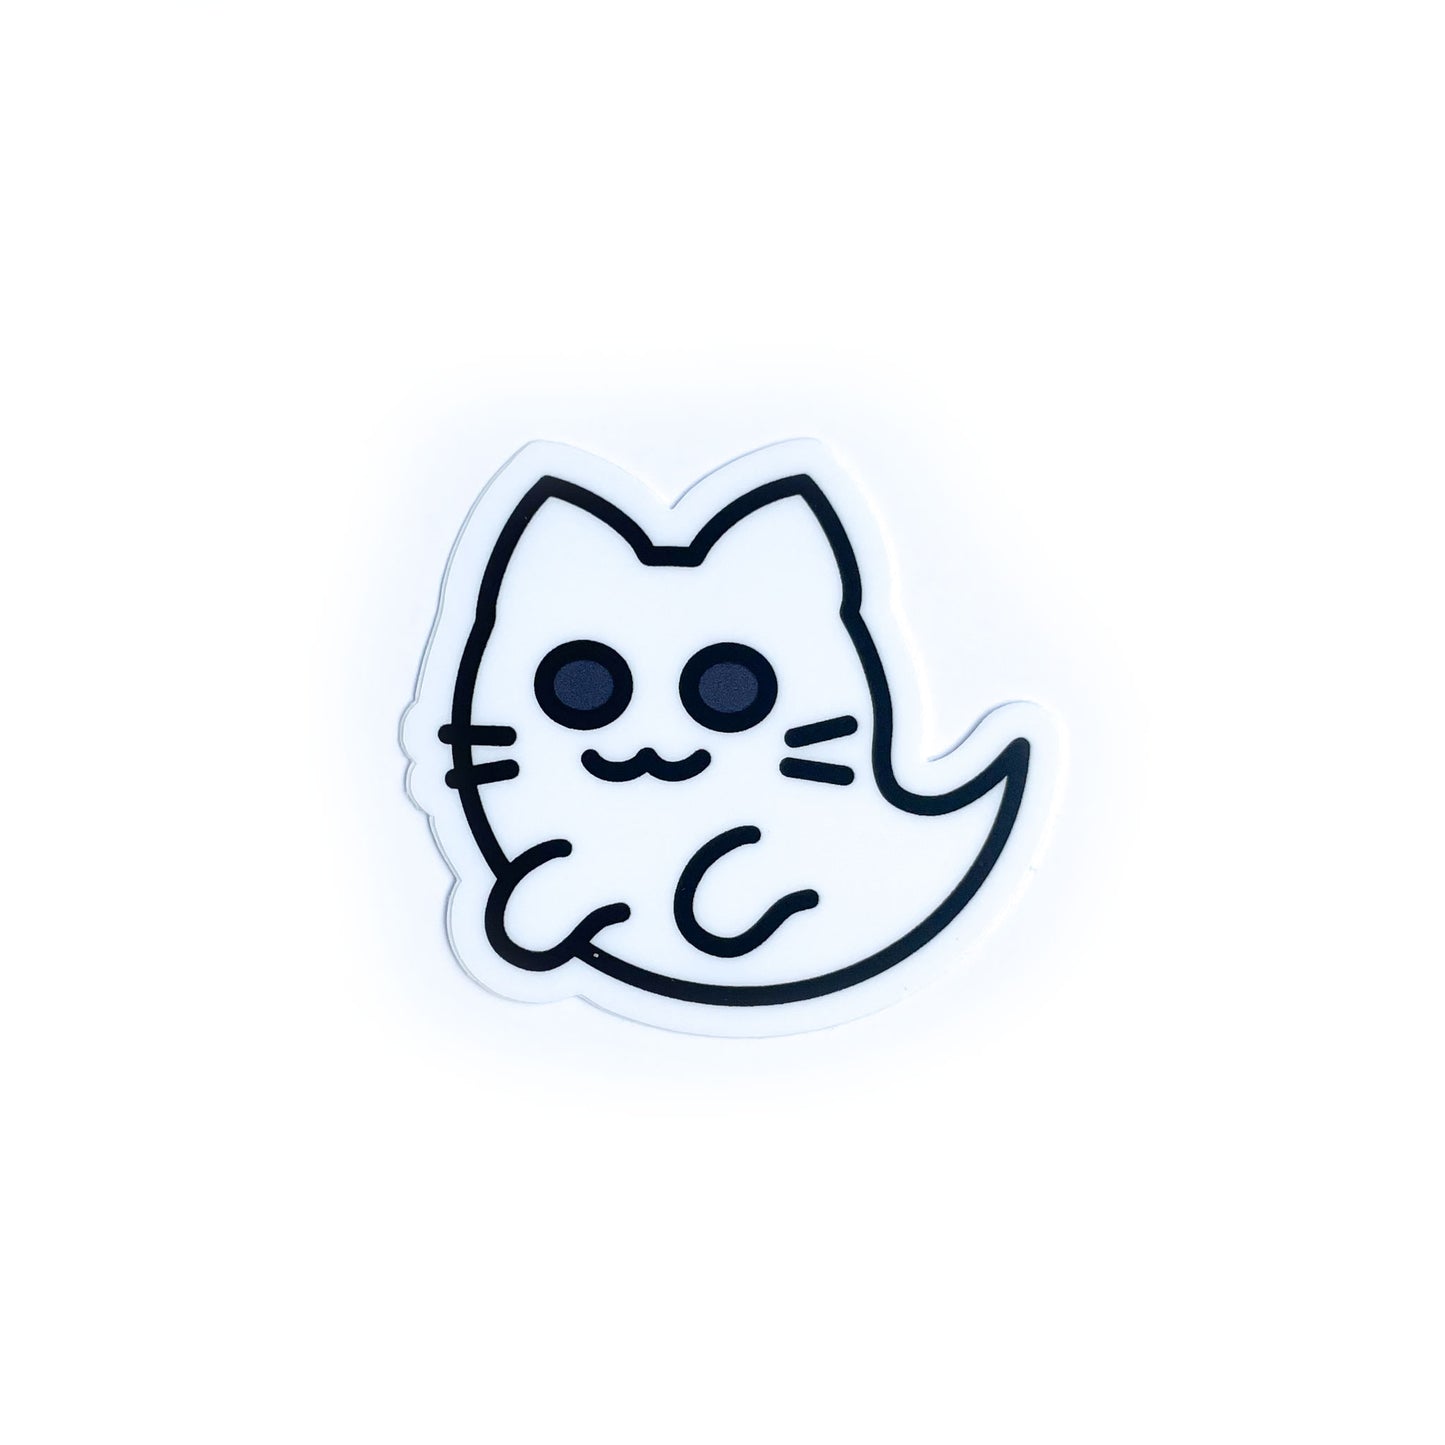 A sticker of a cute ghost cat.